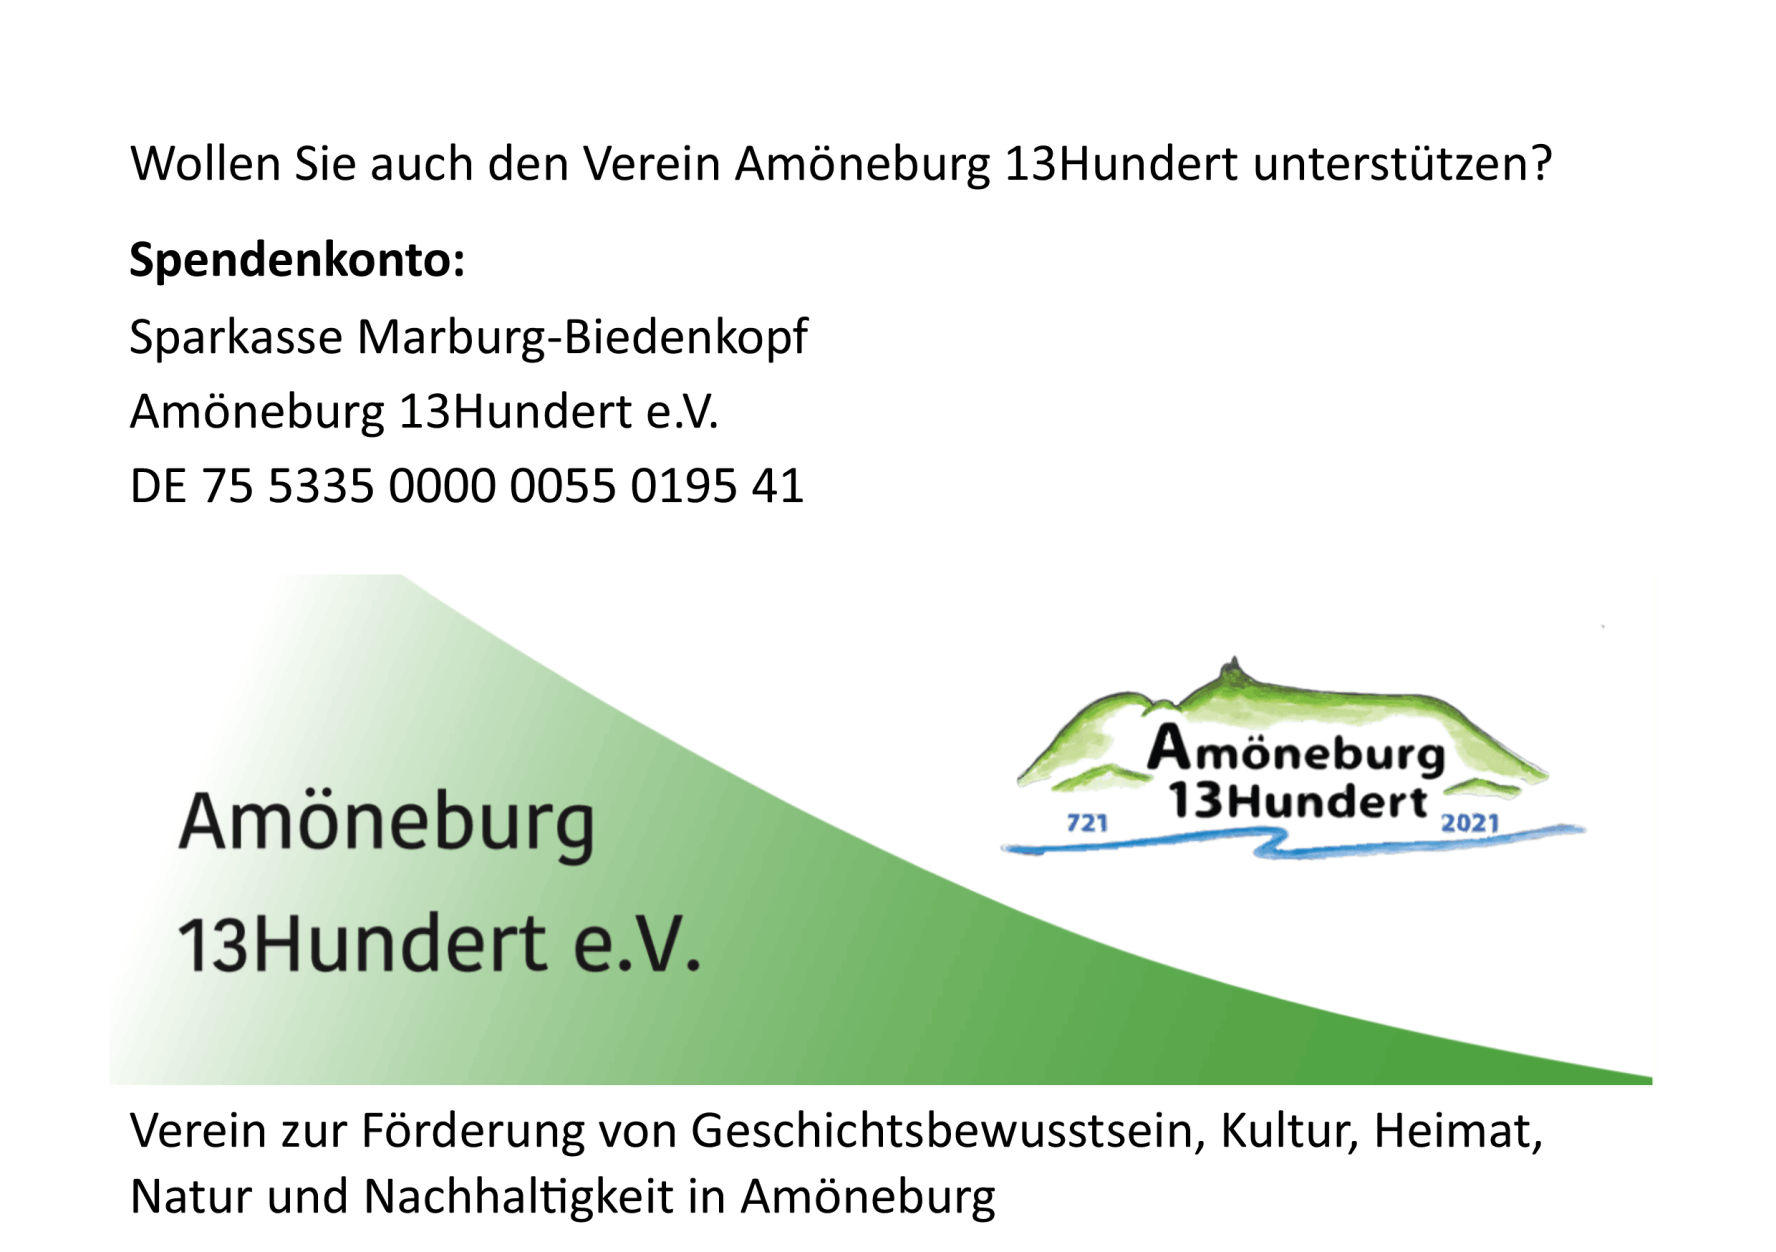 https://www.amoeneburg13hundert.de